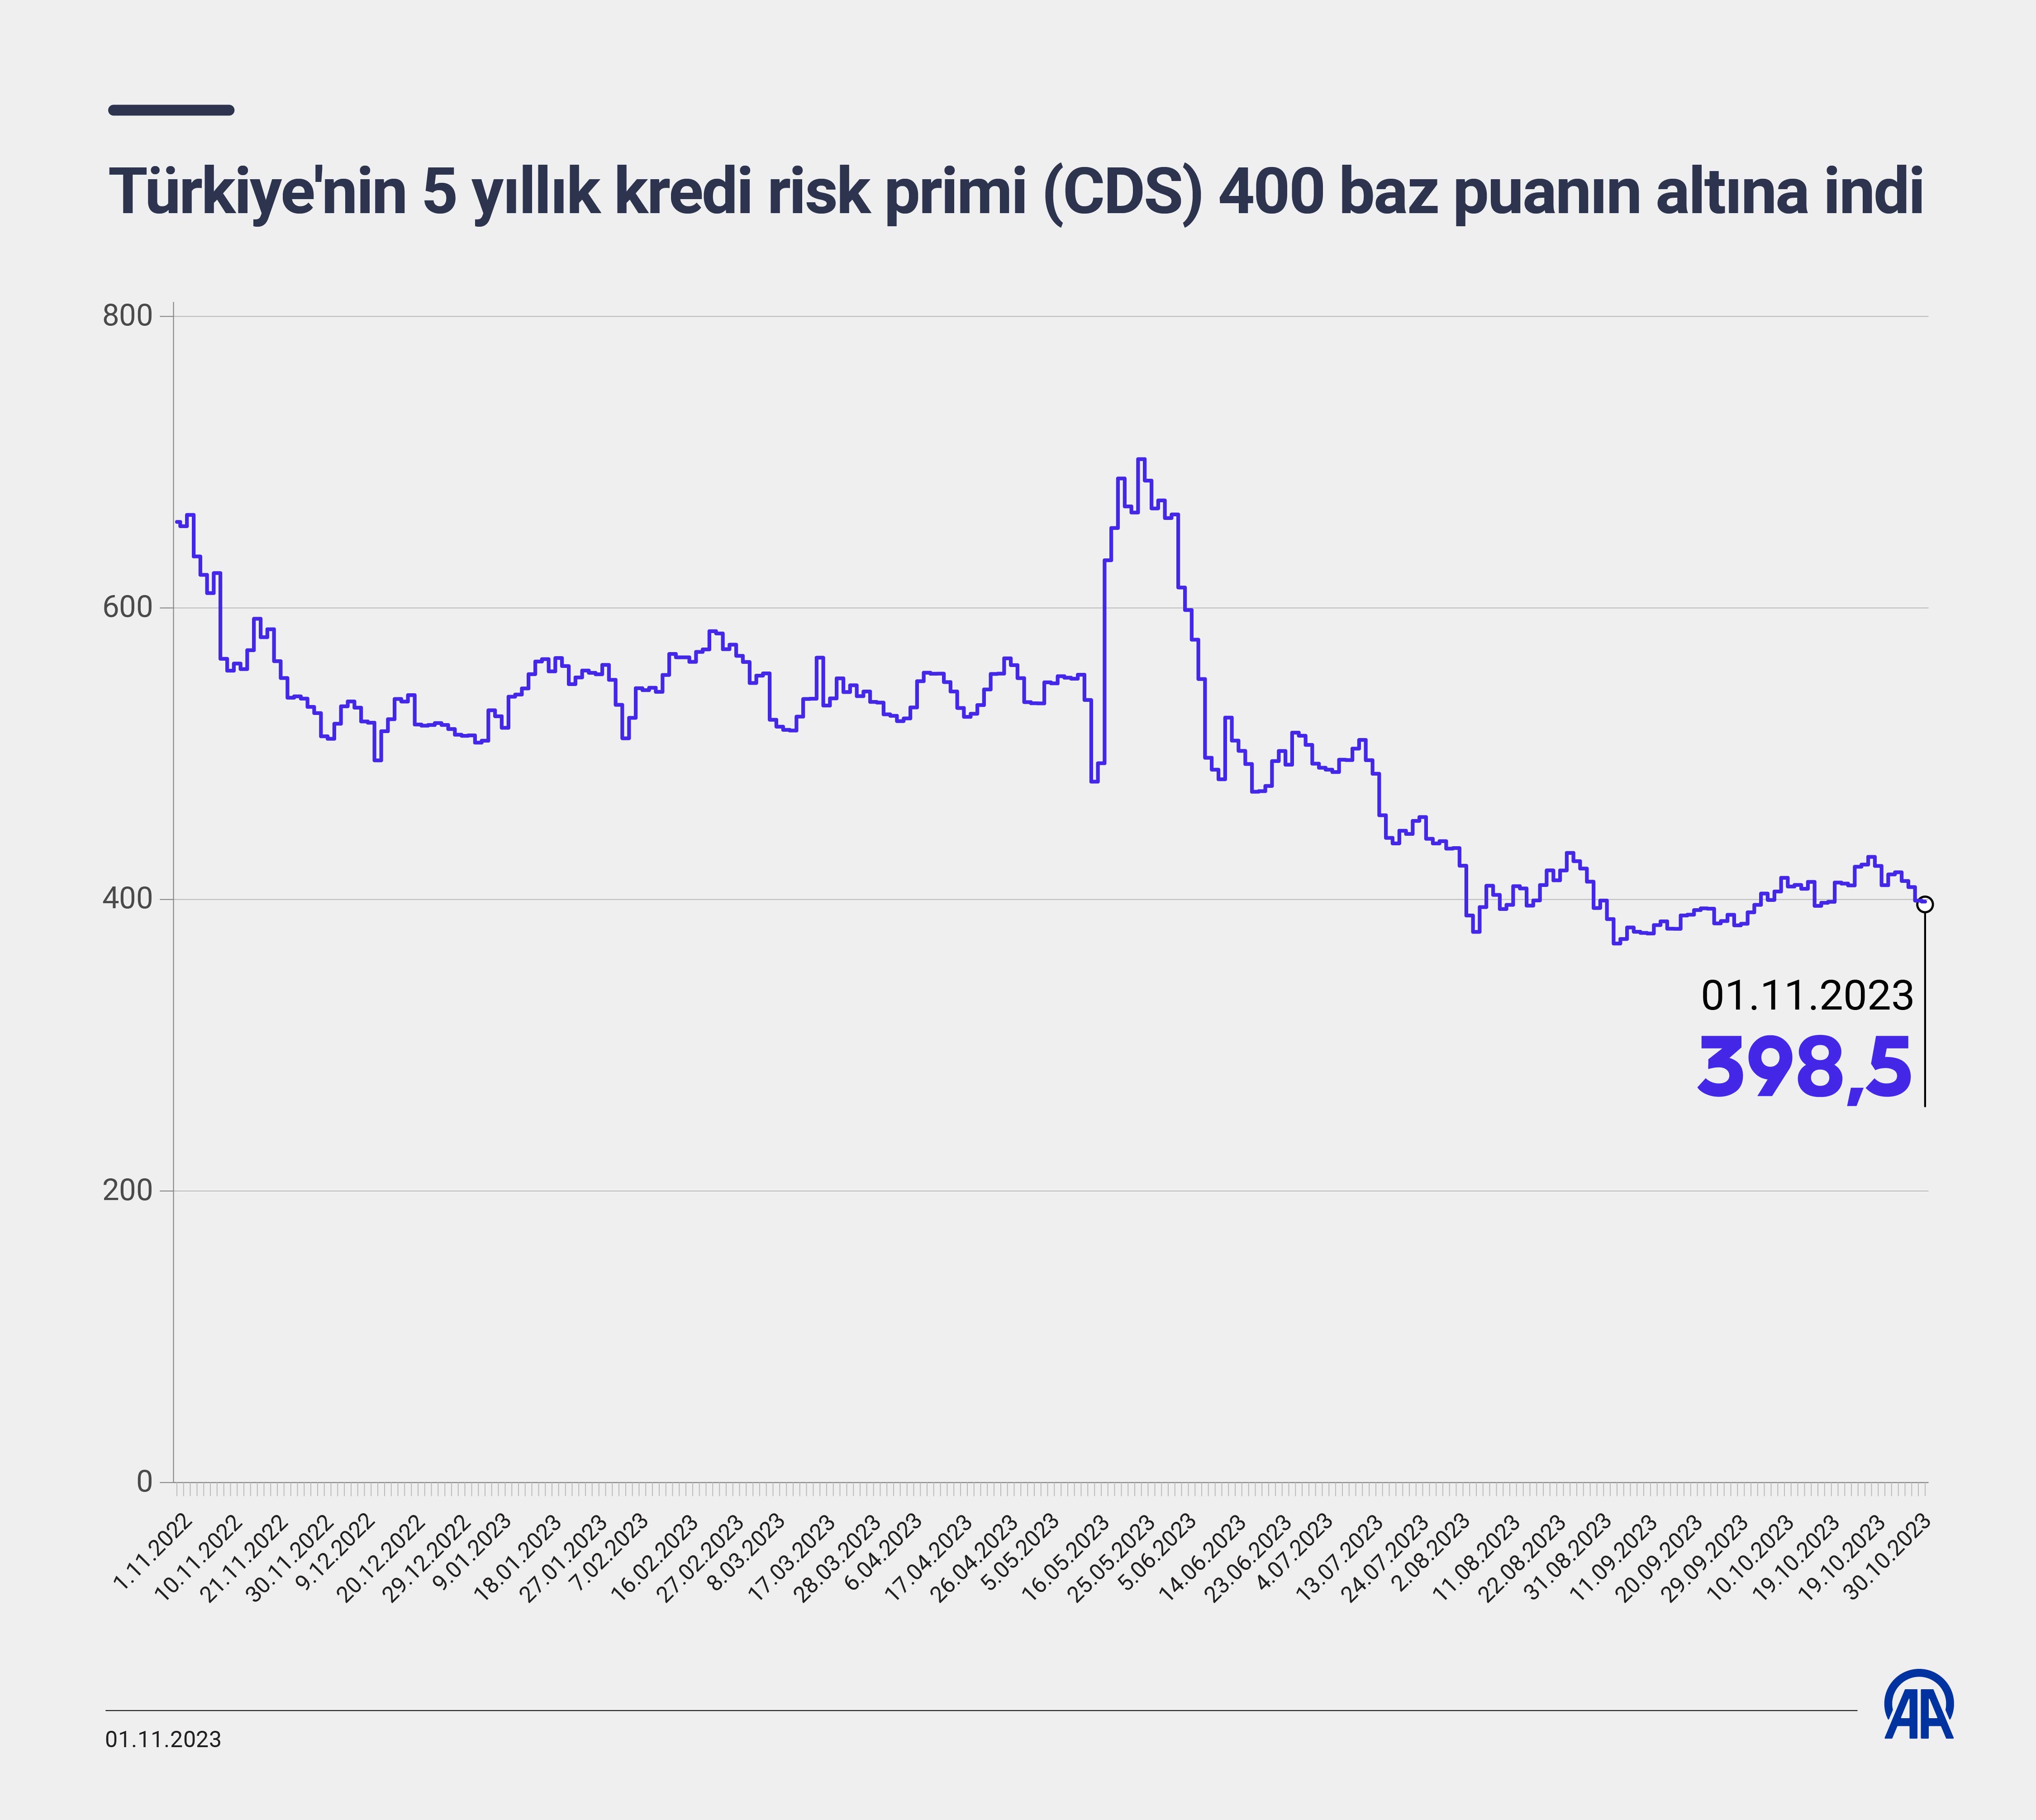 Türkiye'nin 5 yıllık kredi risk primi 400 baz puanın altına indi